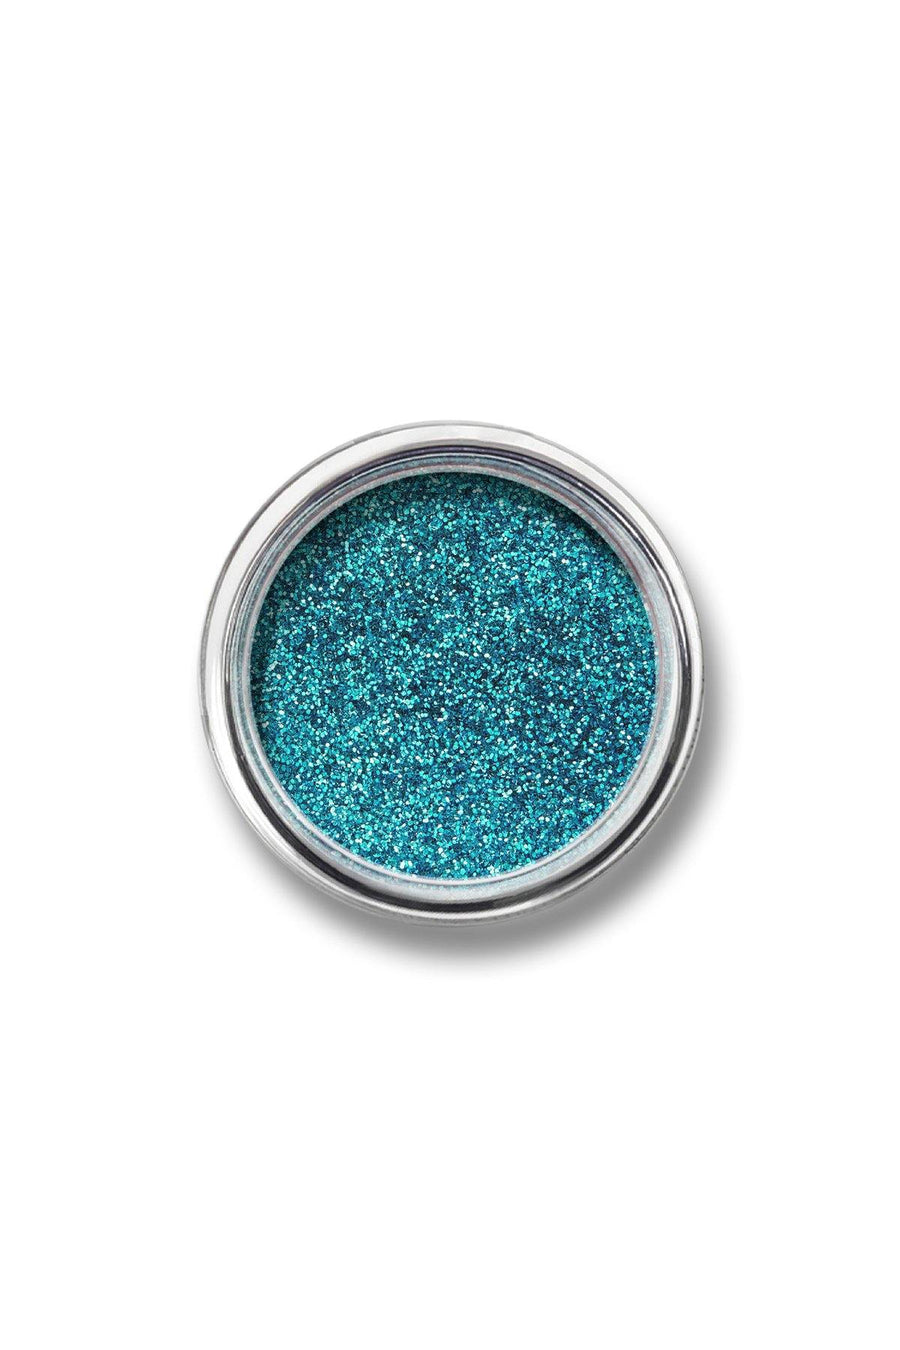 Glitter Powder #7 - Teal - Blend Mineral Cosmetics